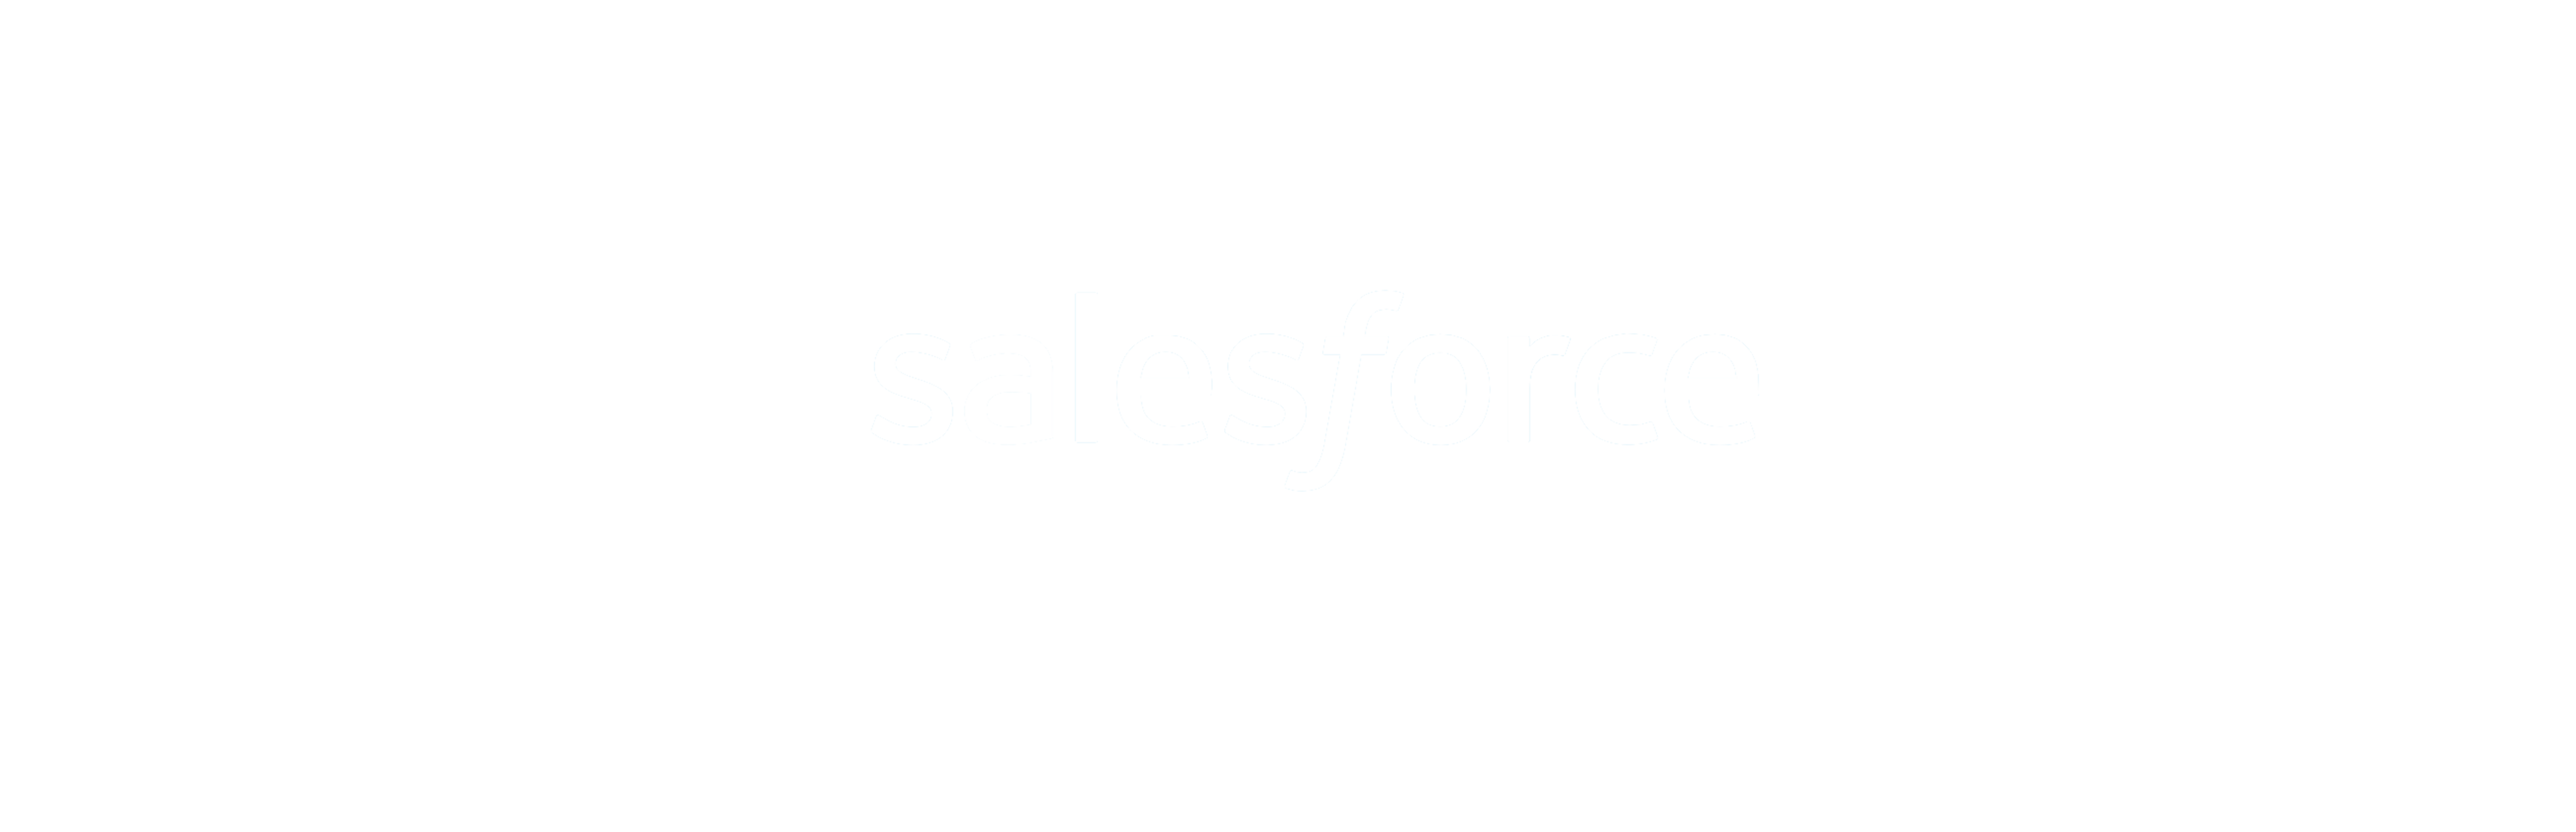 https://www.saastock.com/wp-content/uploads/2020/02/salesforce_.png